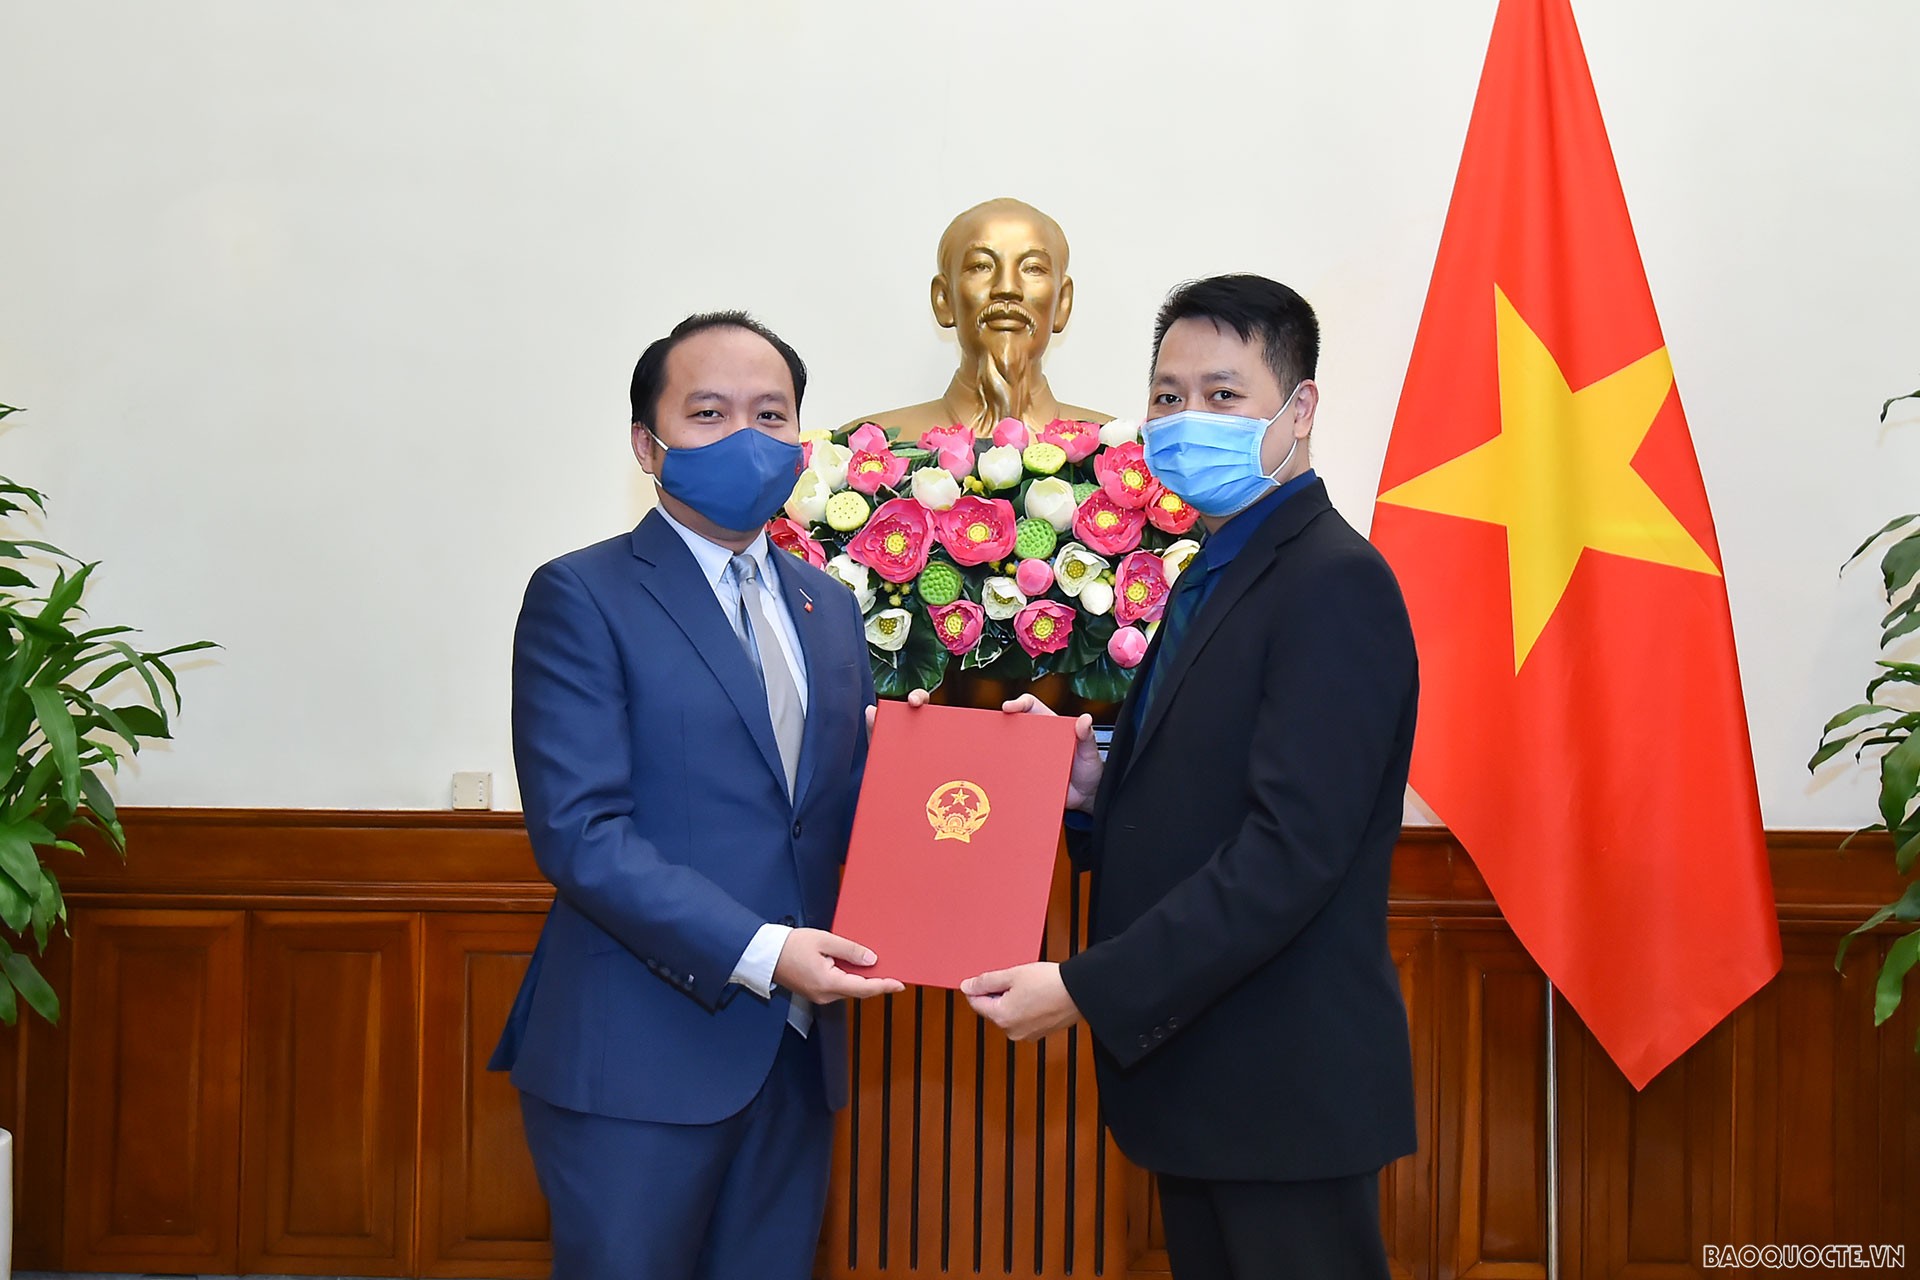 Phó Vụ trưởng phụ trách Vụ Tổ chức Cán bộ Nguyễn Việt Anh đã trao quyết định công nhận ông Lê Trung Kiên, là Tập sự Phó Viện trưởng, Vụ Nghiên cứu Chiến lược, Học viện Ngoại giao.